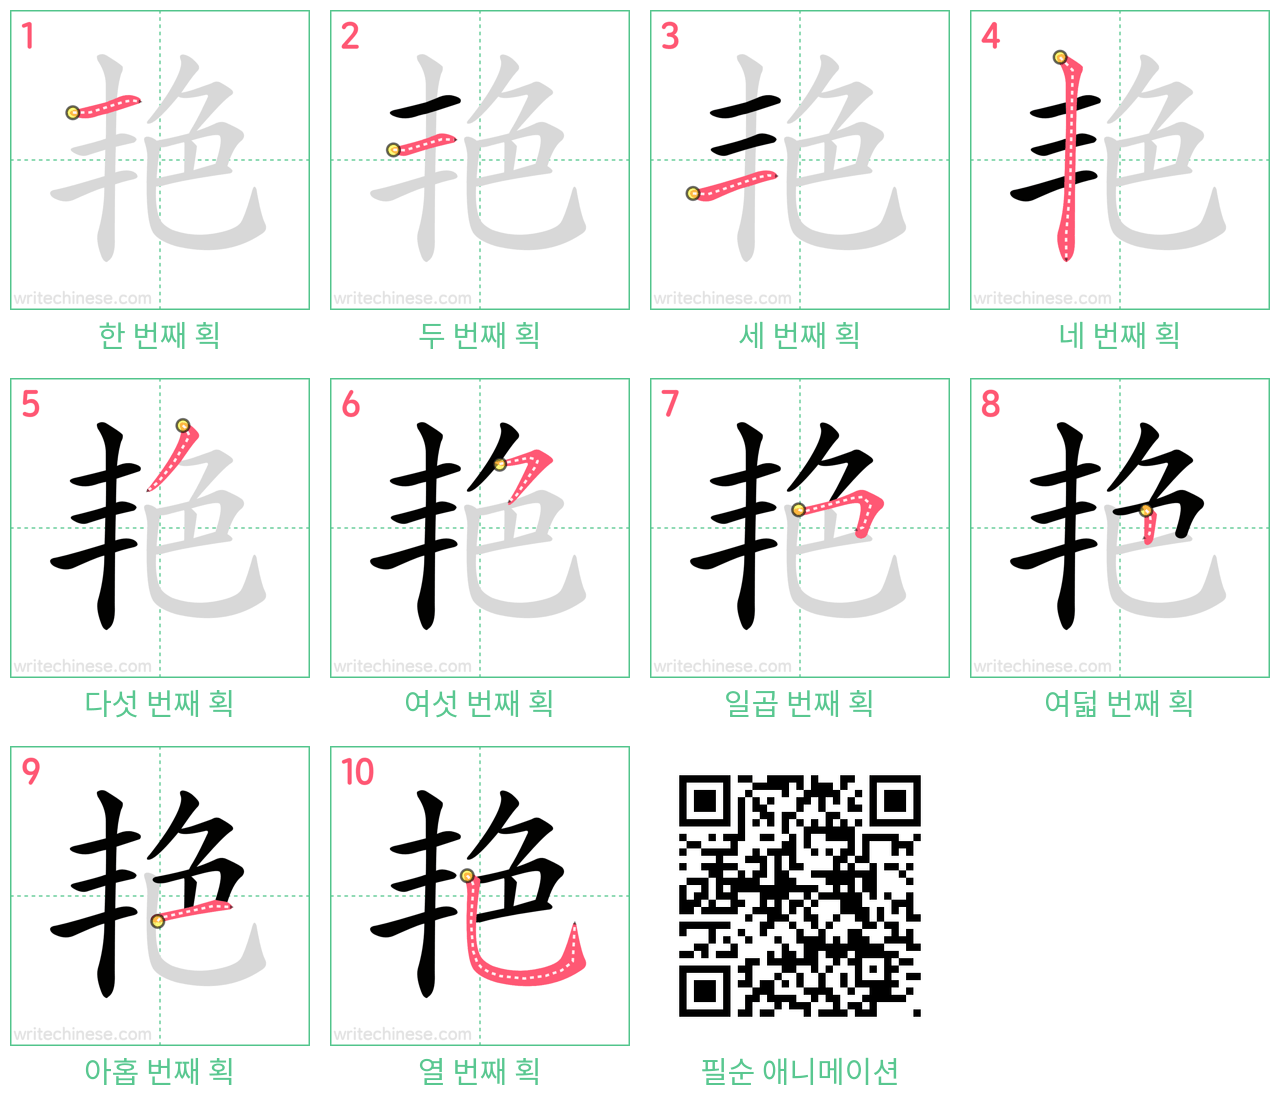 艳 step-by-step stroke order diagrams